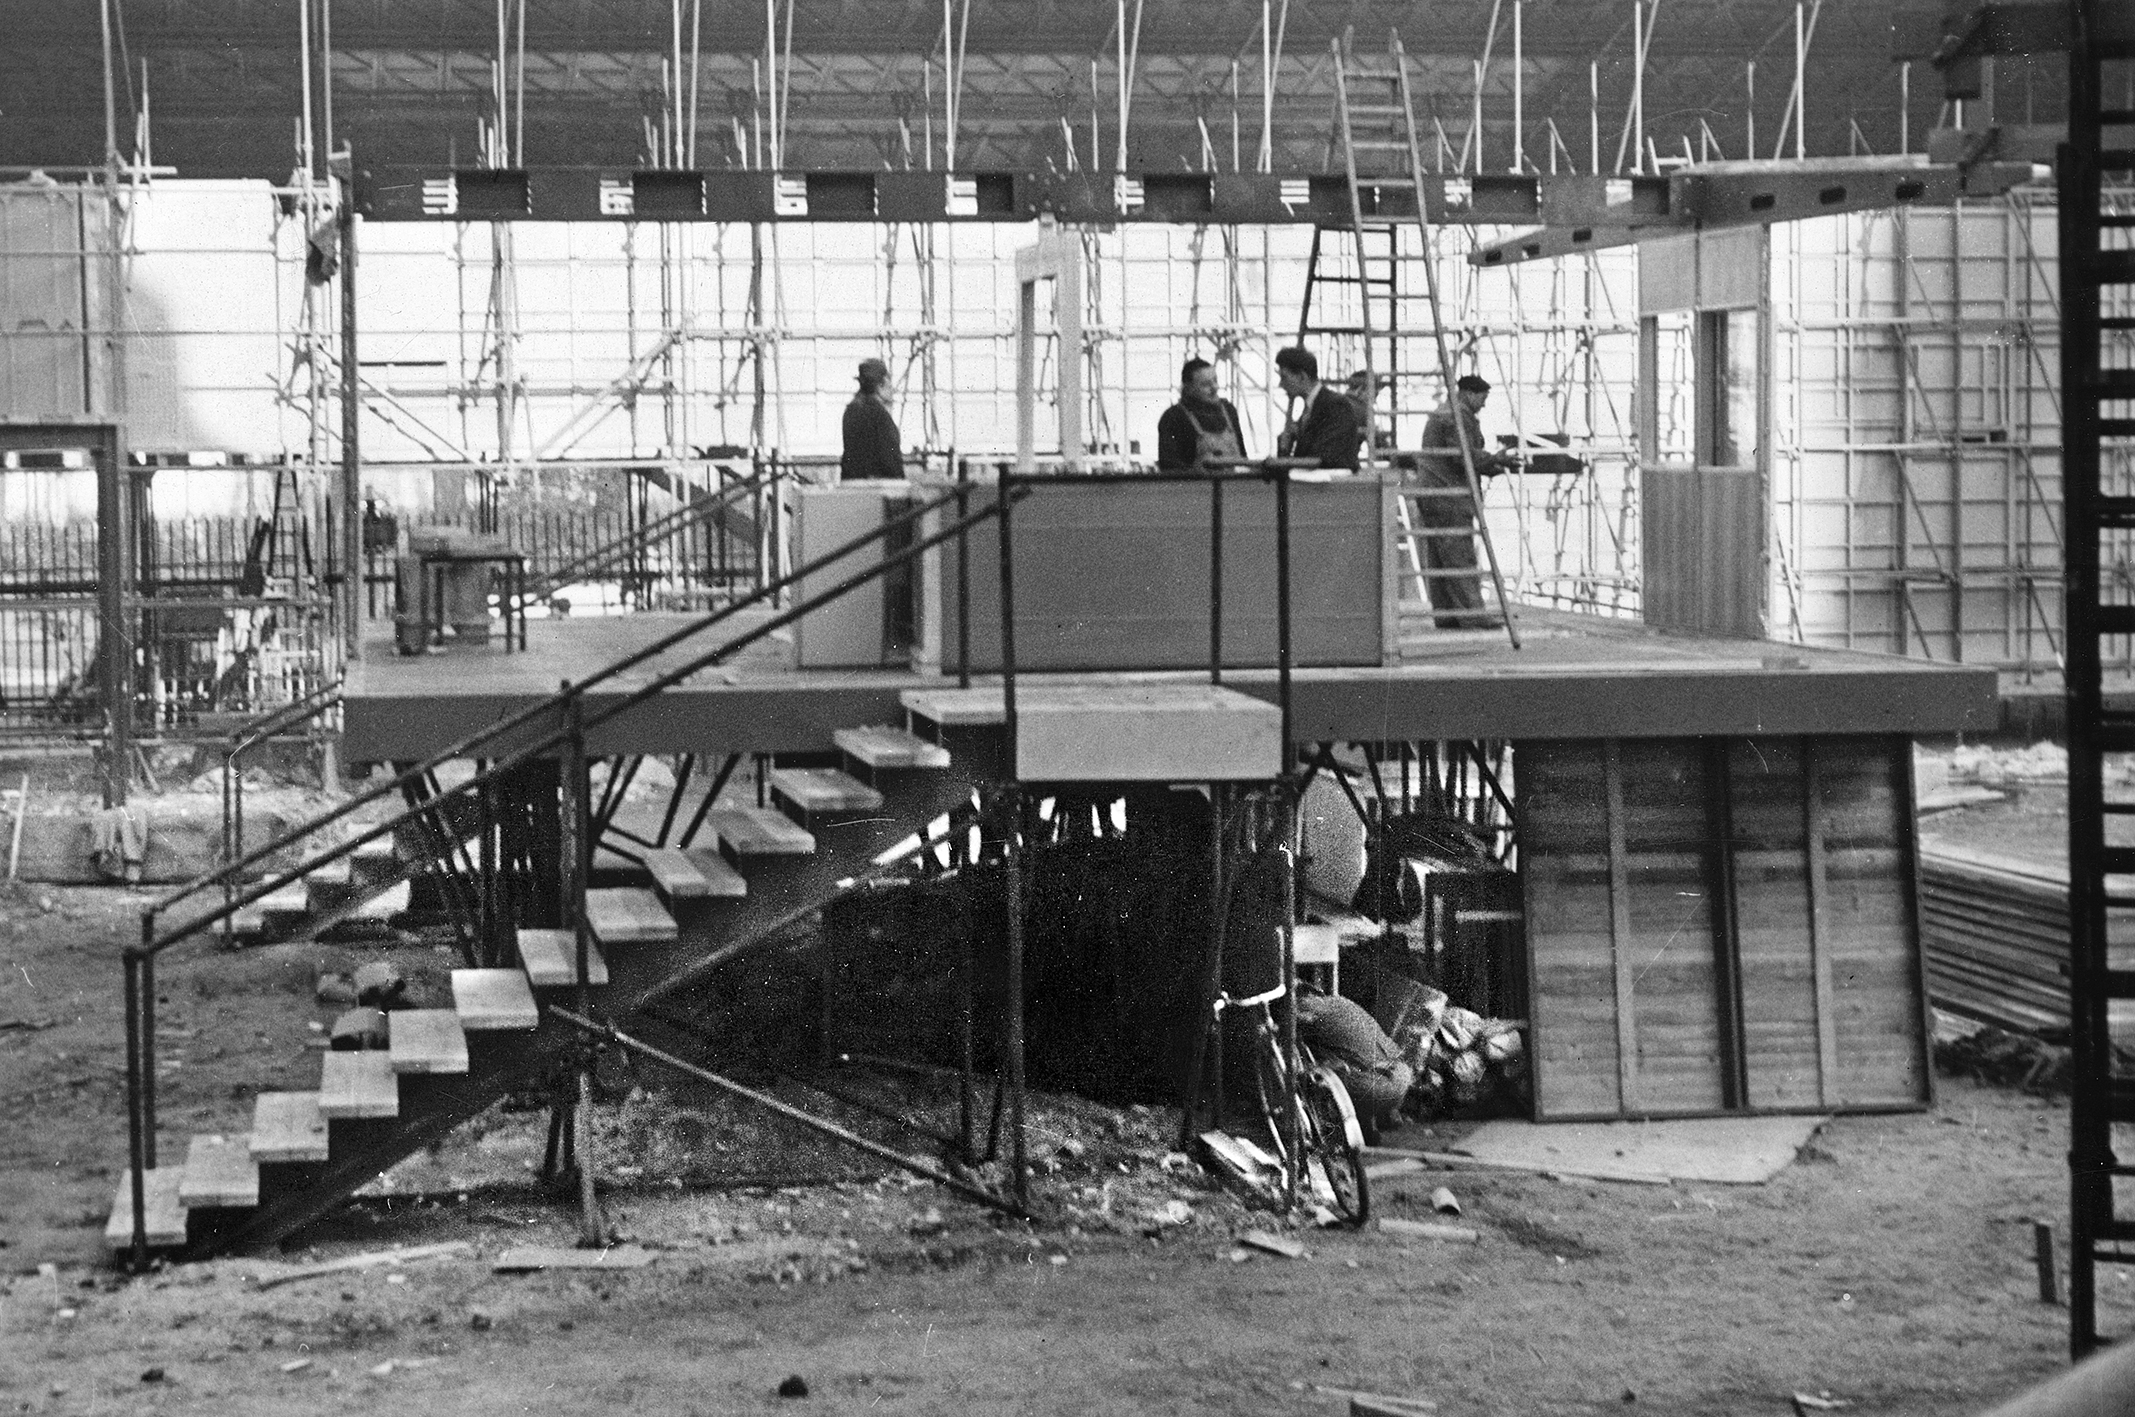 Métropole demountable house. Assembling an 8x8 house at the Housing Exhibition, Salon des Arts Ménagers, Grand Palais, Paris, February 1950.